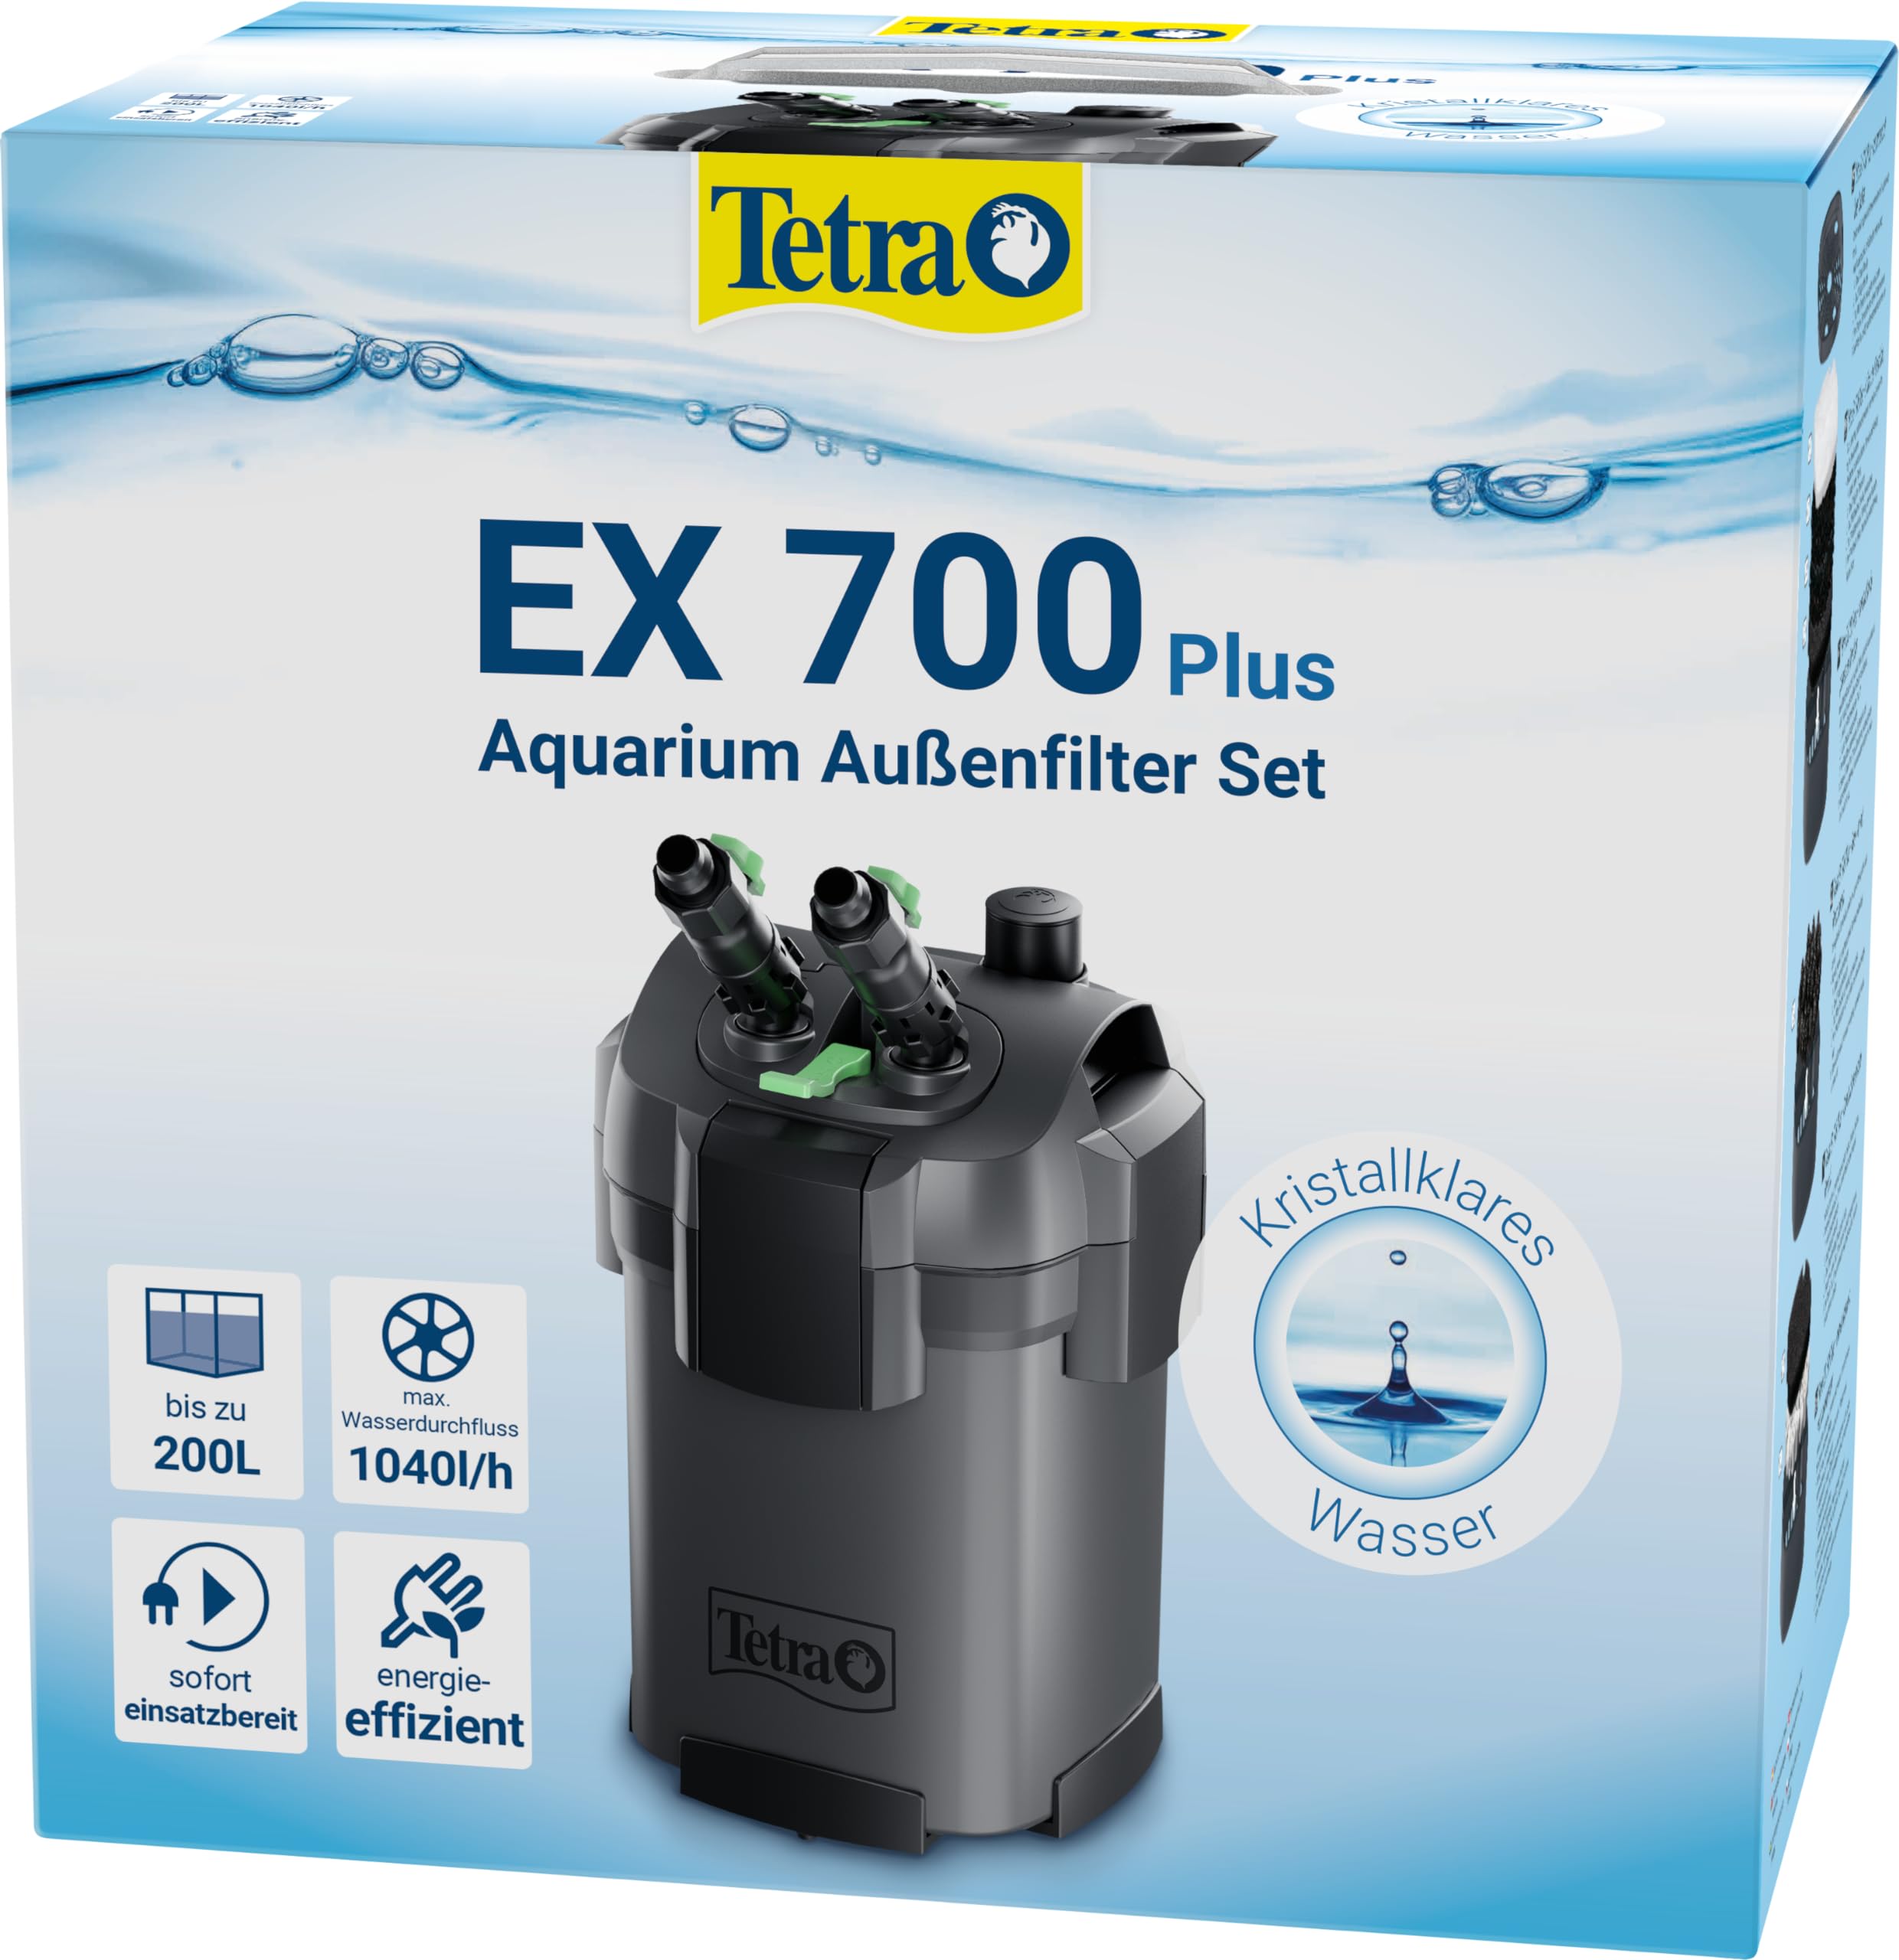 Tetra Aquarium Außenfilter EX 700 Plus - leistungsstarker Filter für Aquarien bis 200 L, schafft kristallklares fischgerechtes Wasser